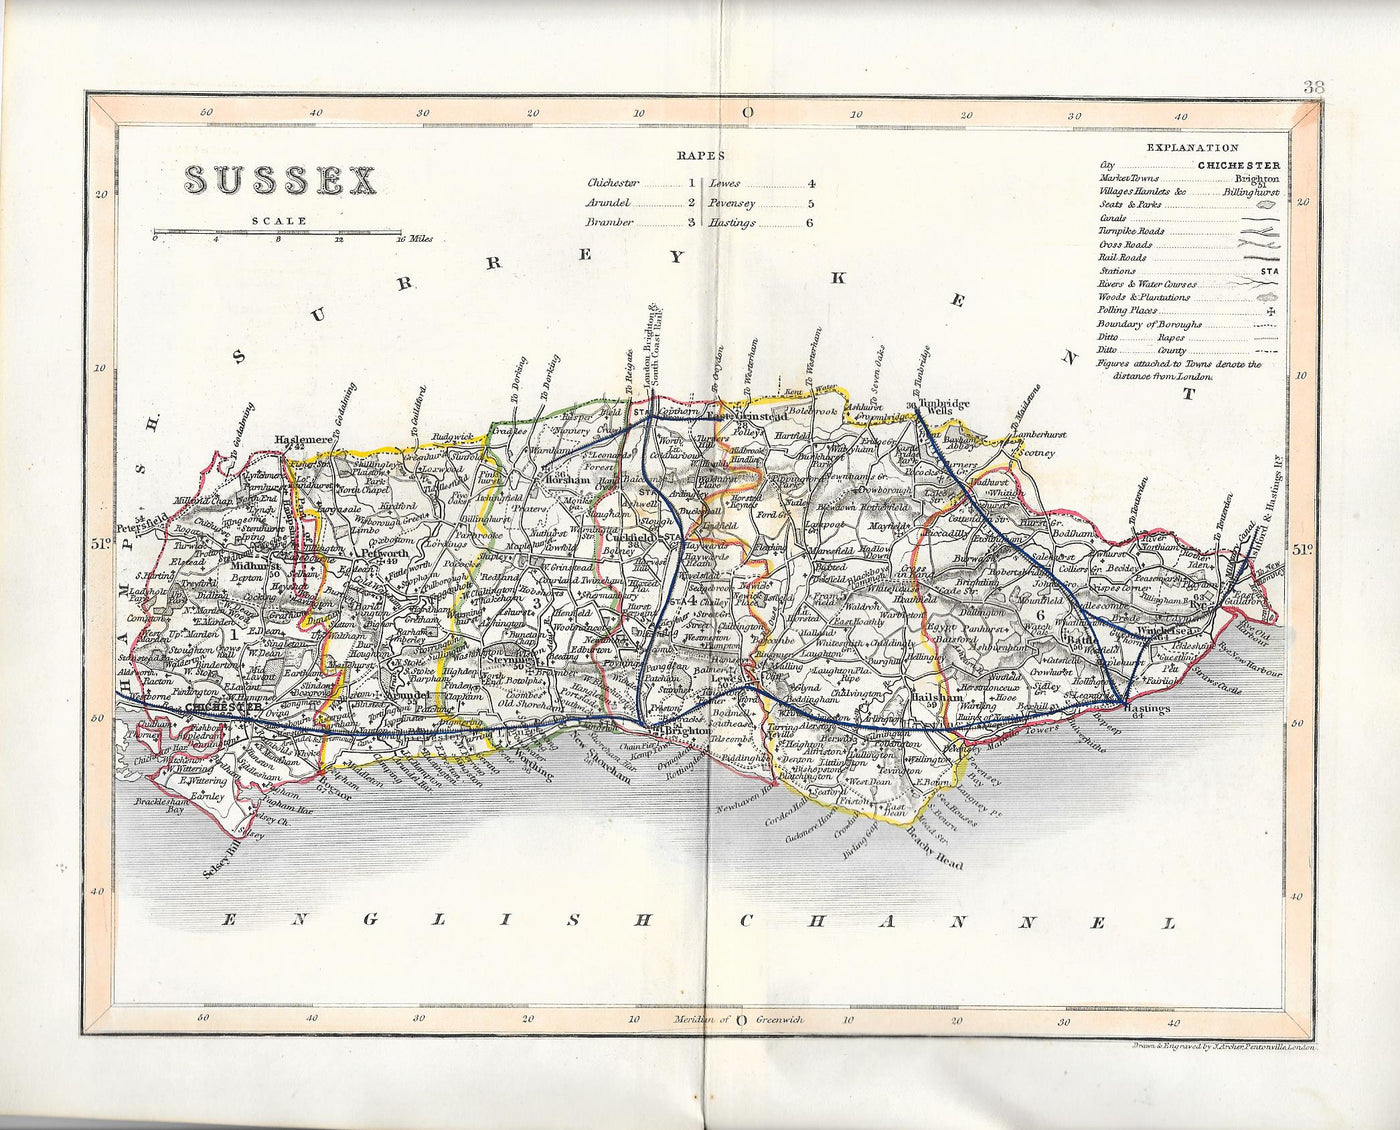 Sussex antique map published 1845